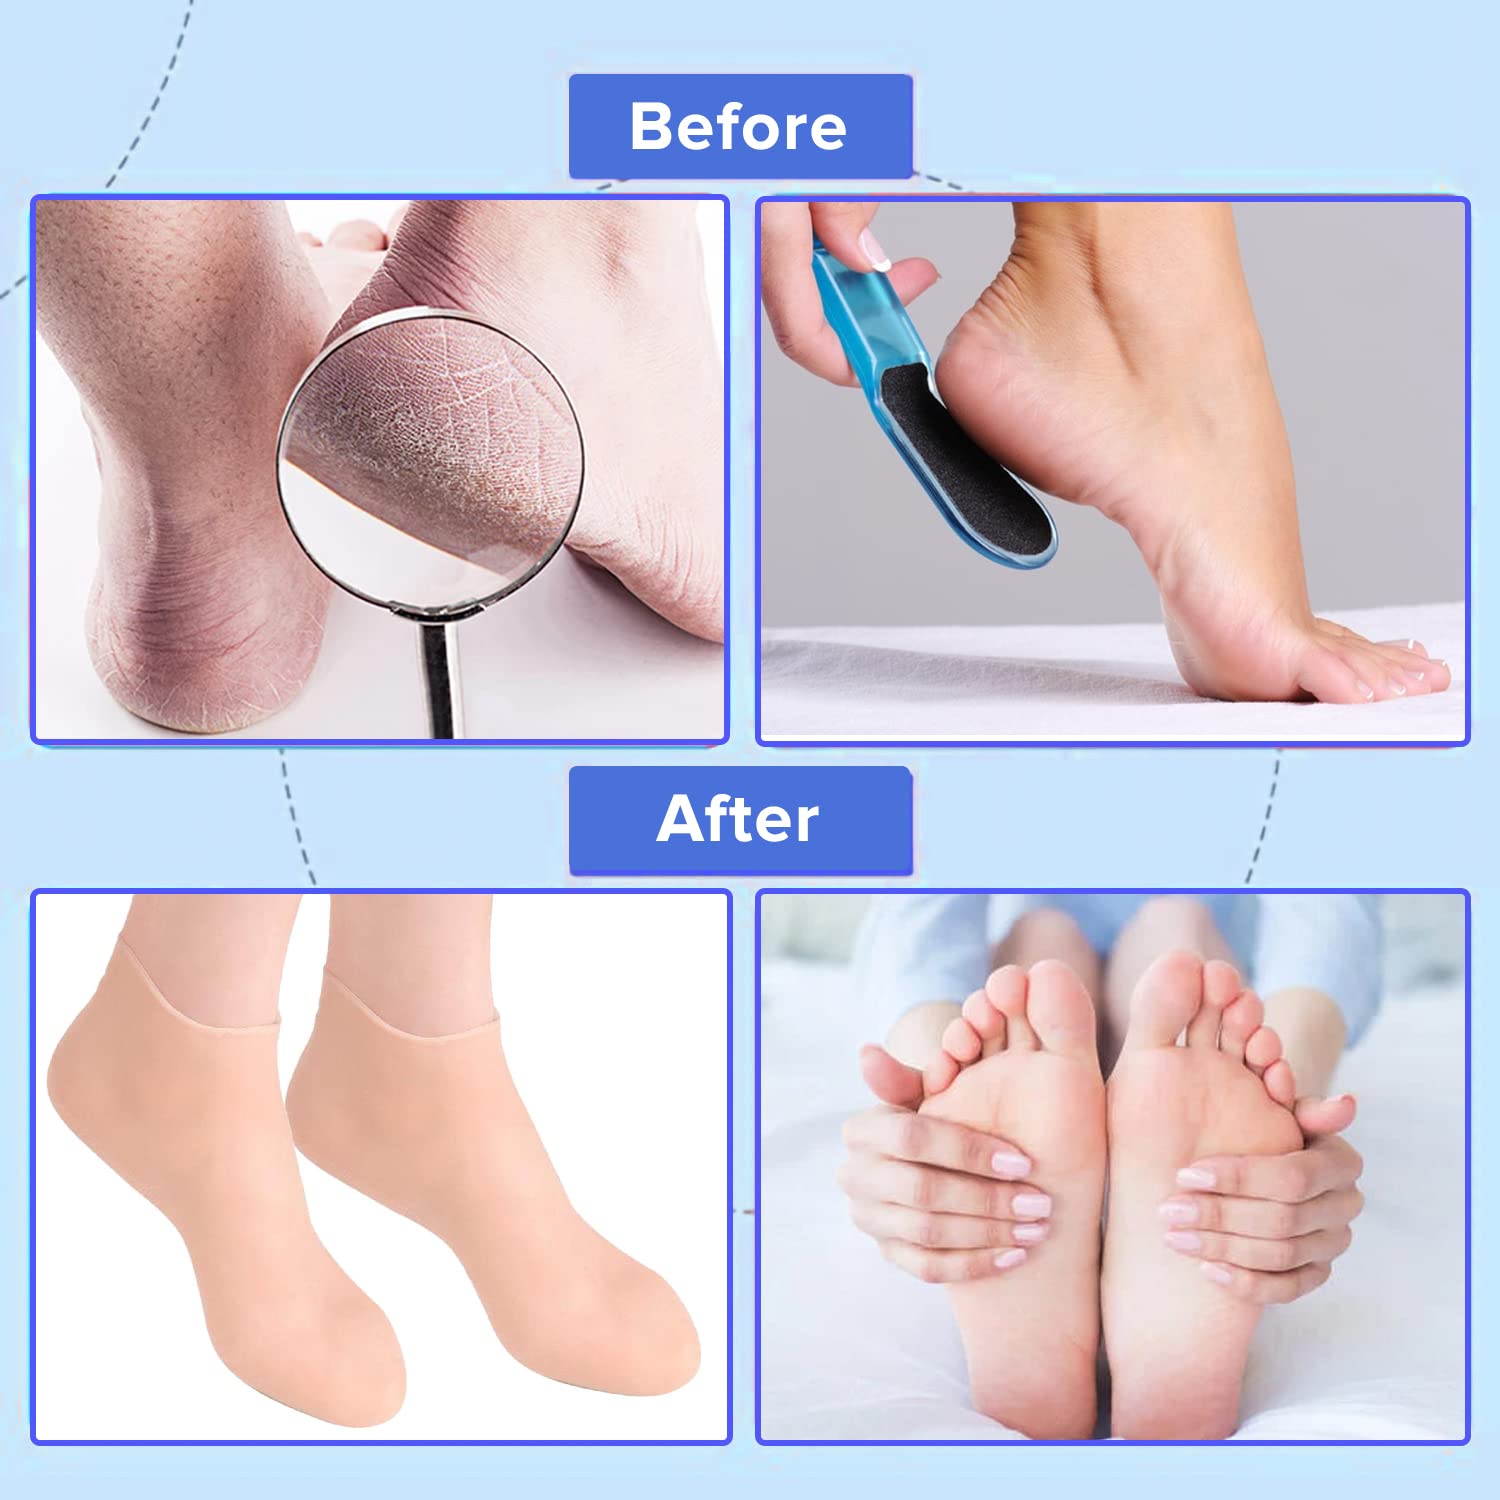 Dr Foot Silicone Socks | Anti Slip Silicone Moisturizing Socks | Dry Cracking Skin | For Both Men & Women | Full Length, Medium Size – 1 Pair (Pack of 5)